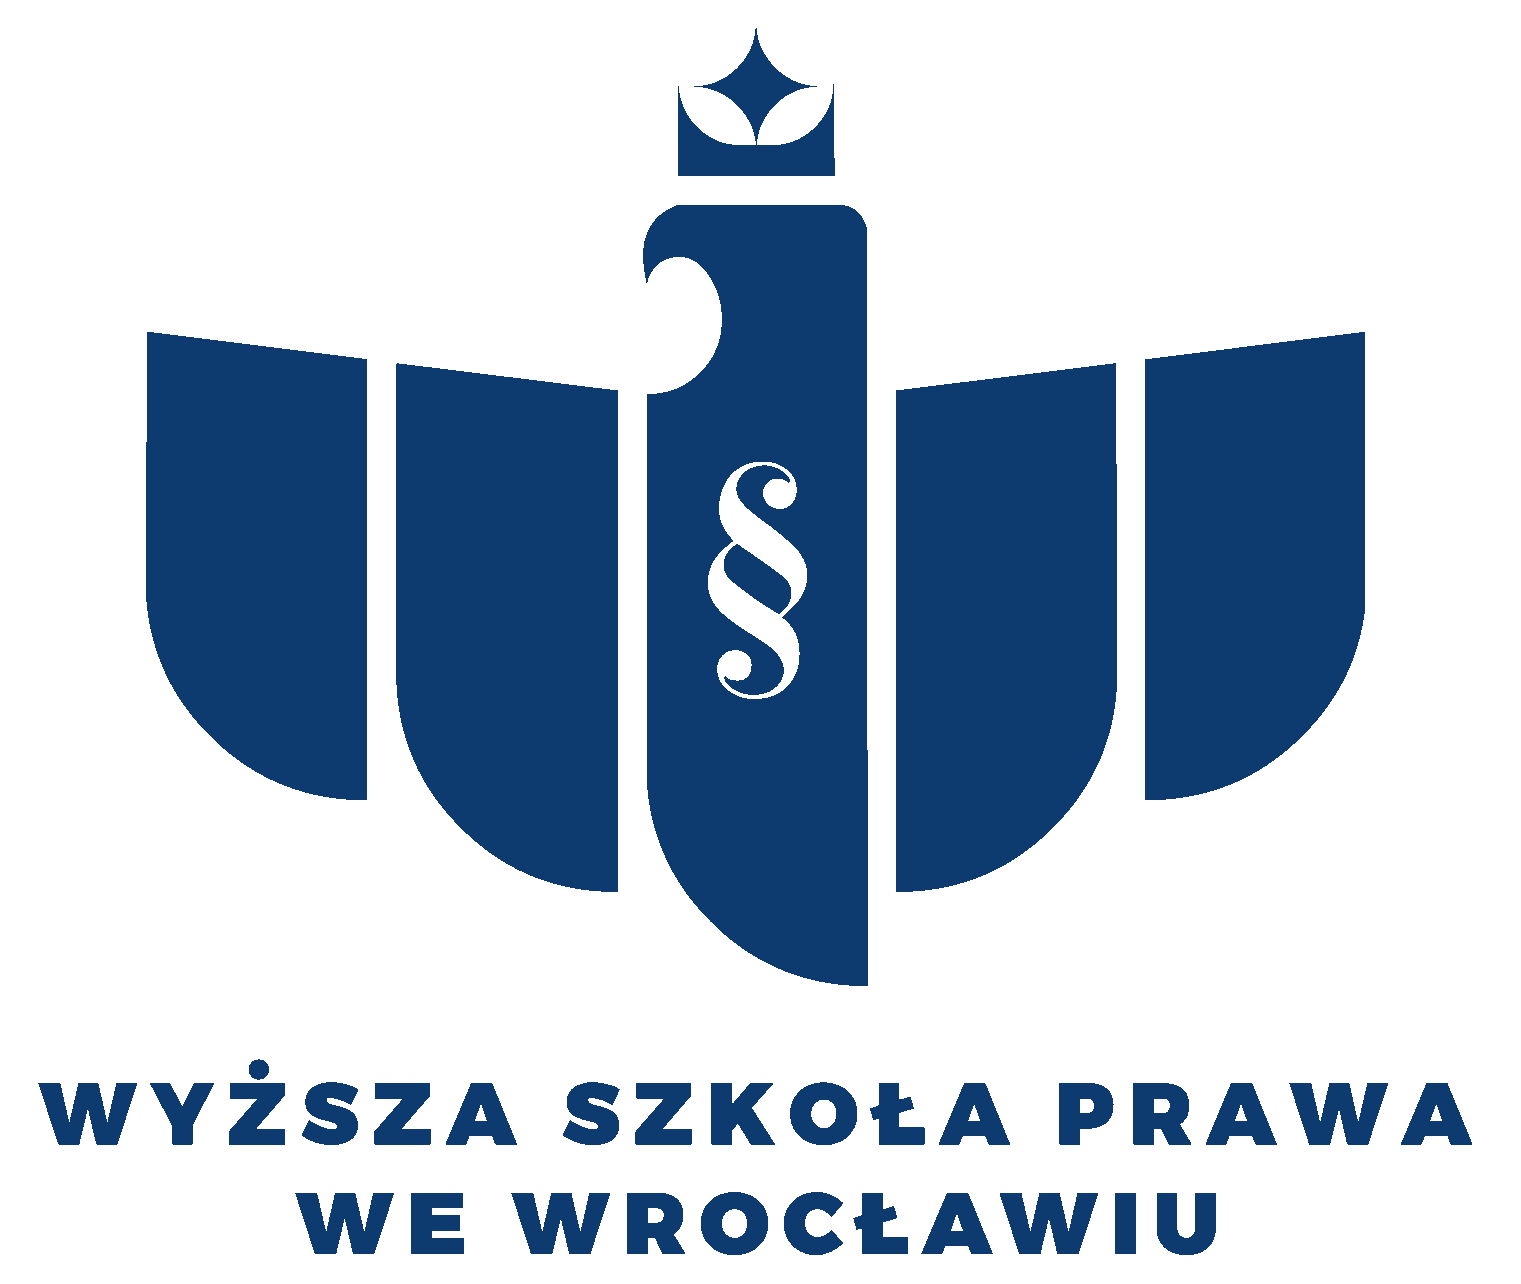 Logo Wyższa Szkoła Prawa (WSP) we Wrocławiu - Wrocław